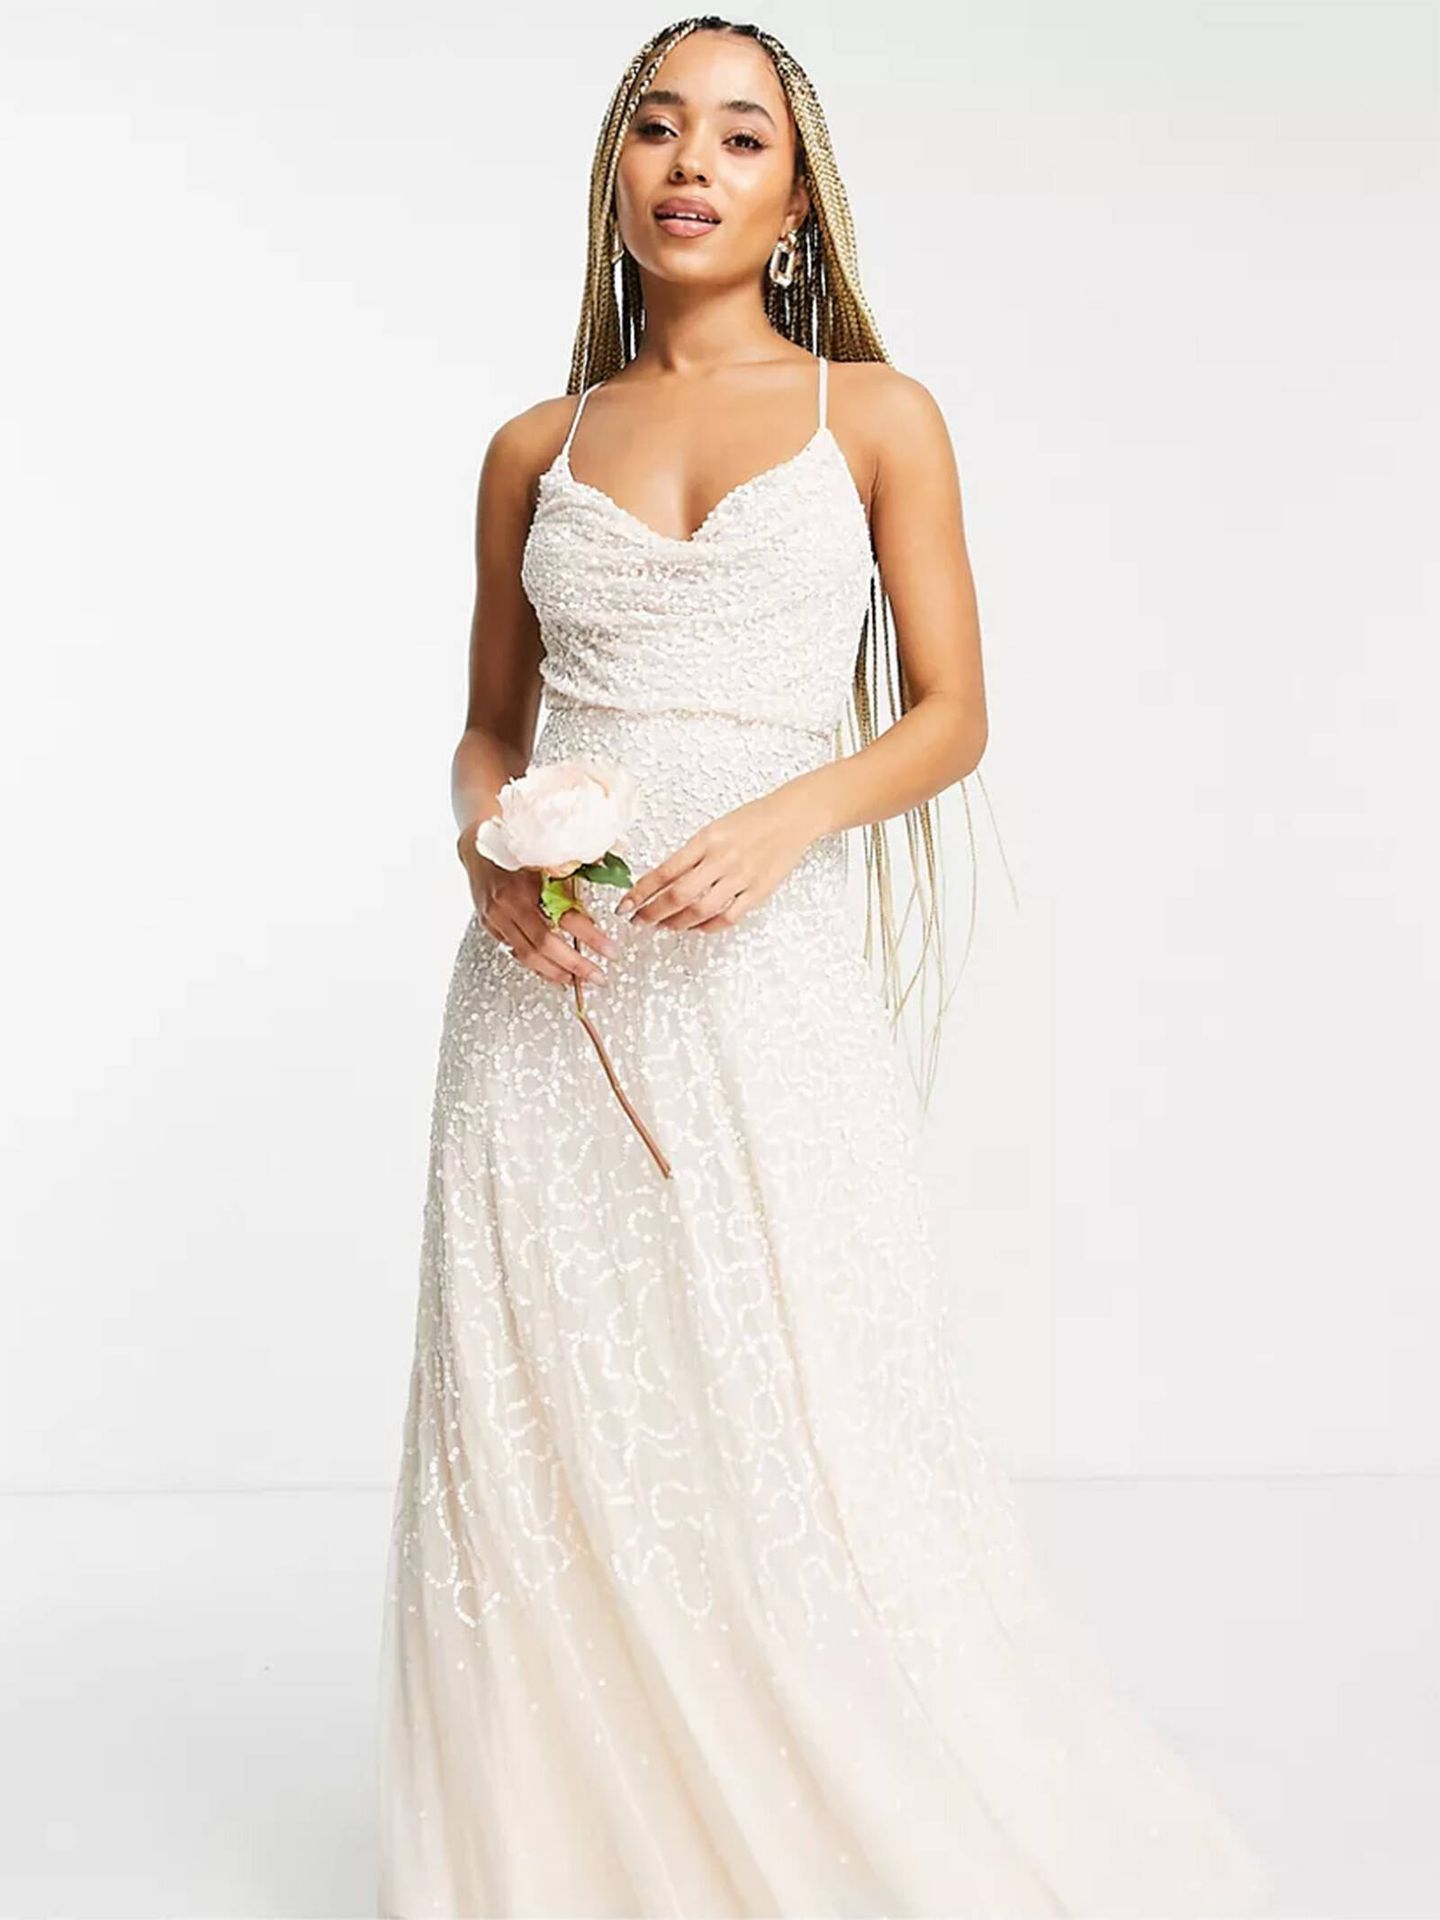 Vestido de novia de Asos de aire boho-romántico a precio low-cost. (Cortesía)